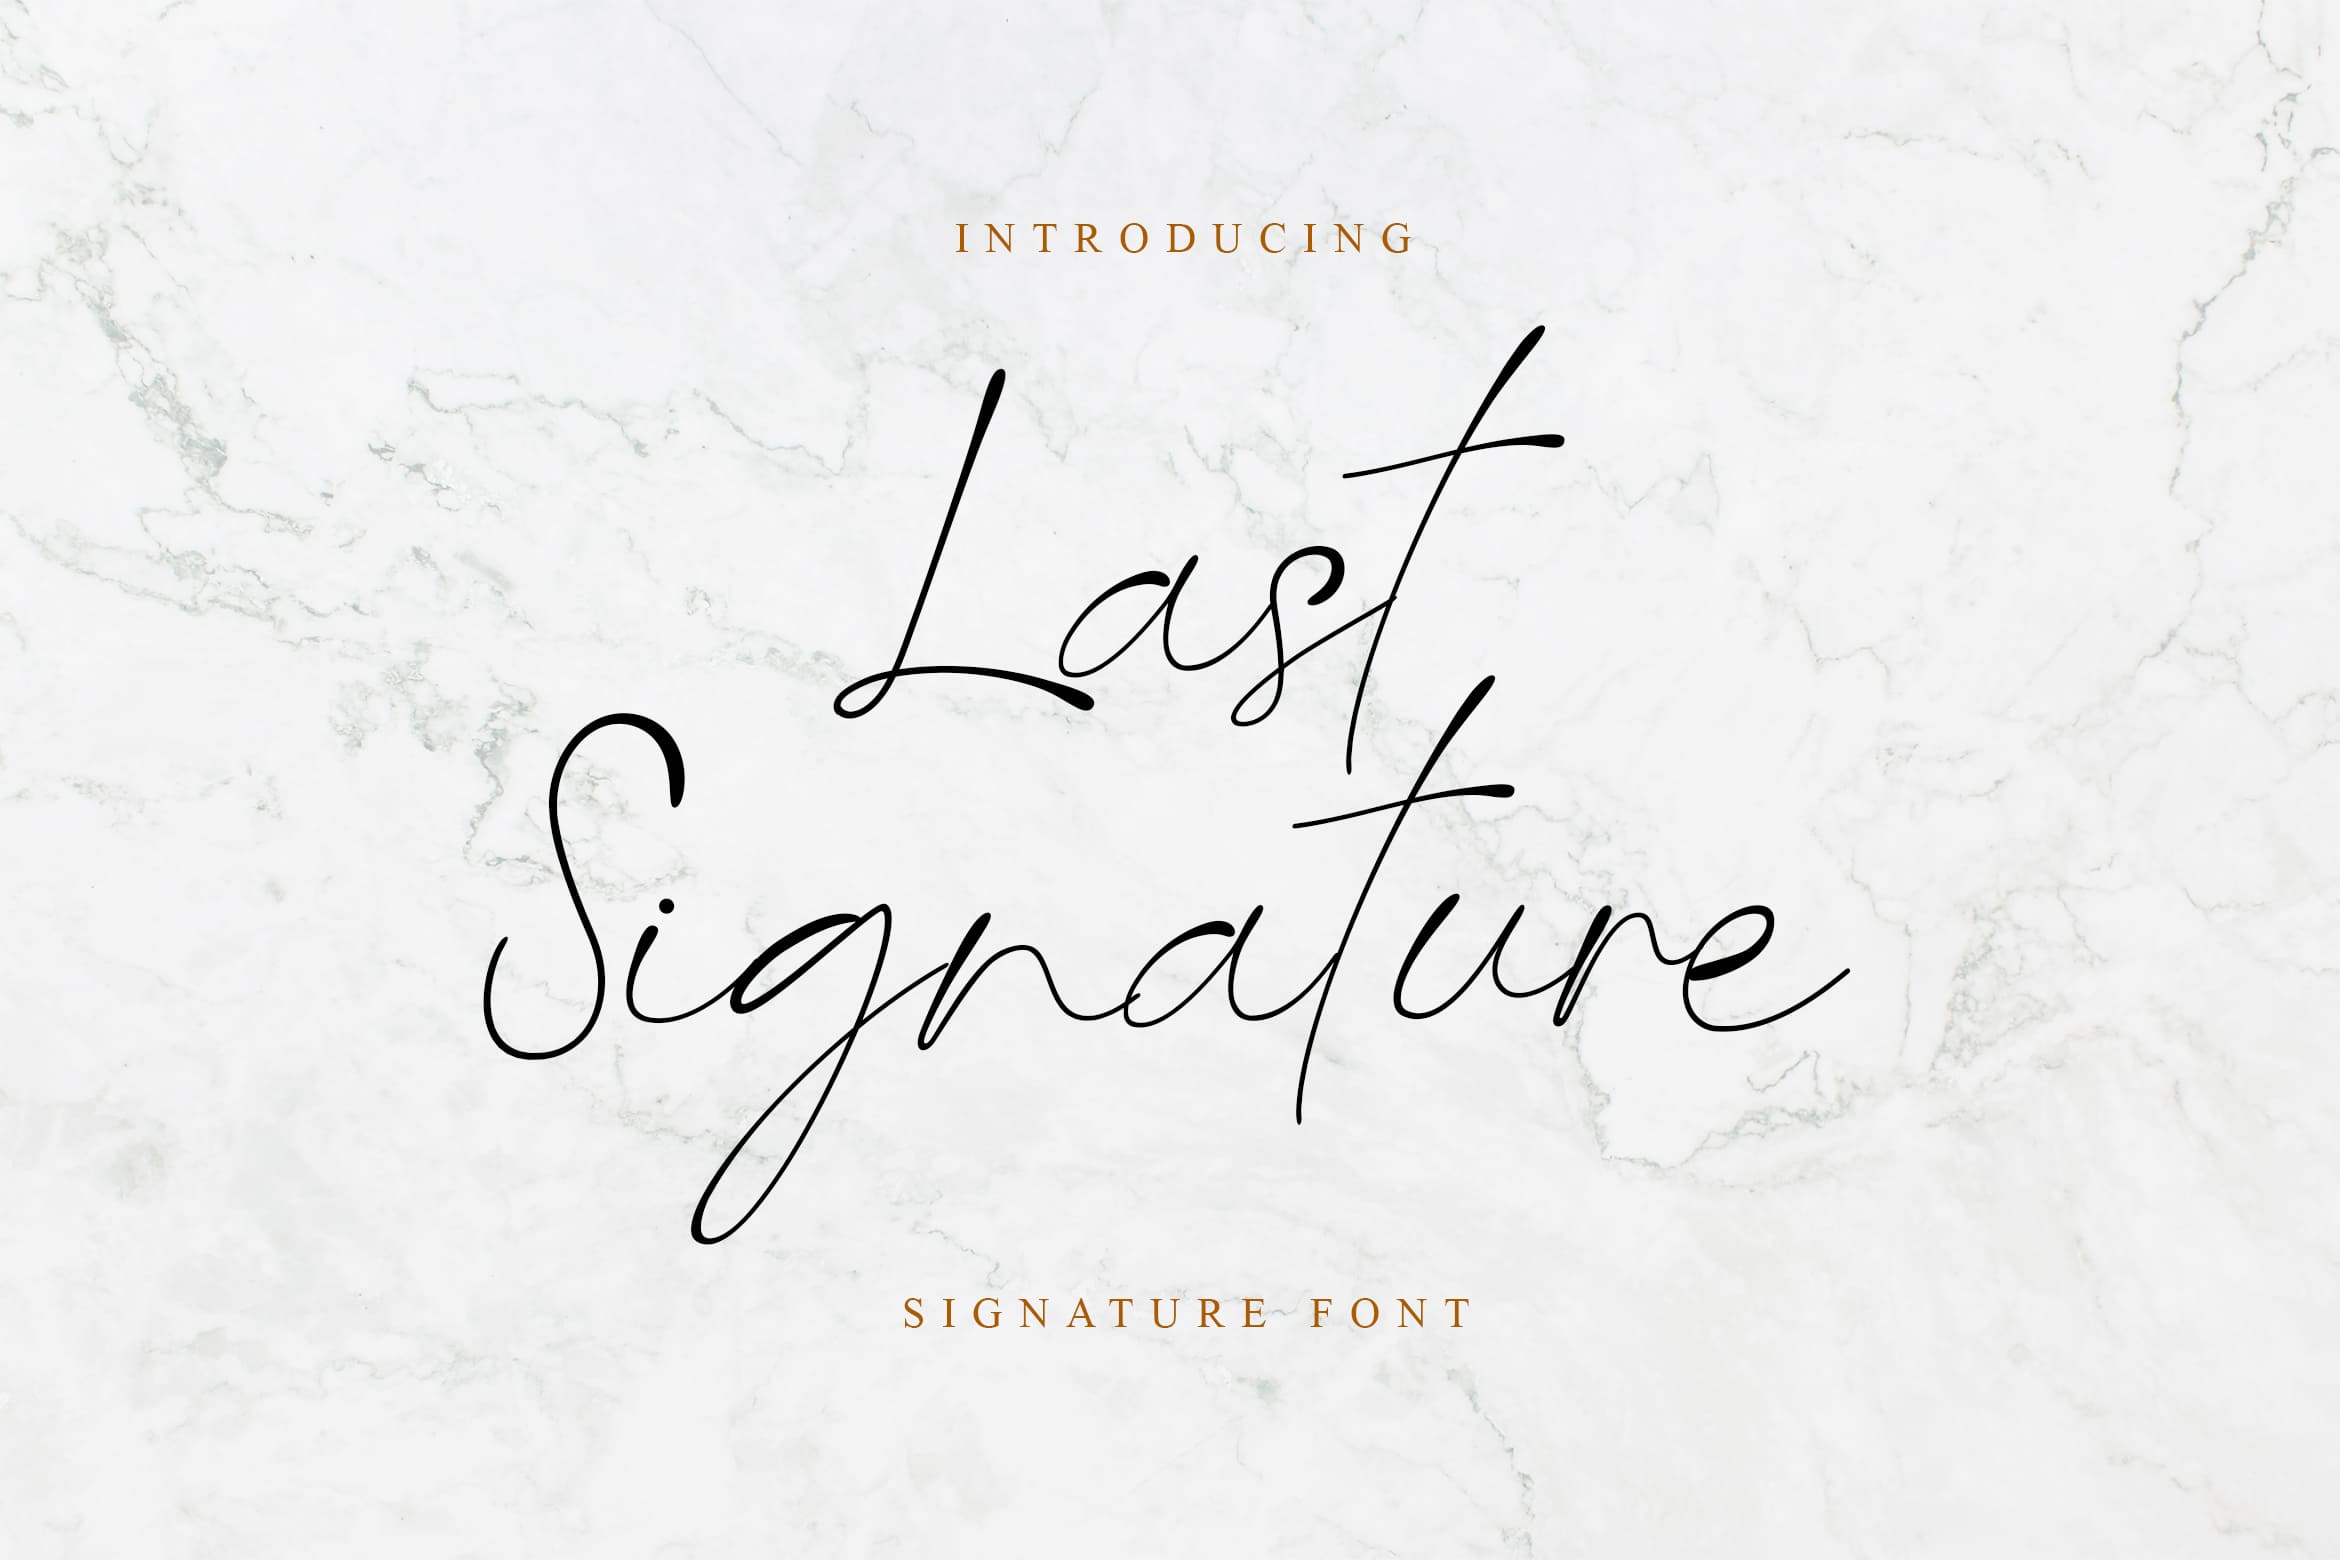 Last Signature